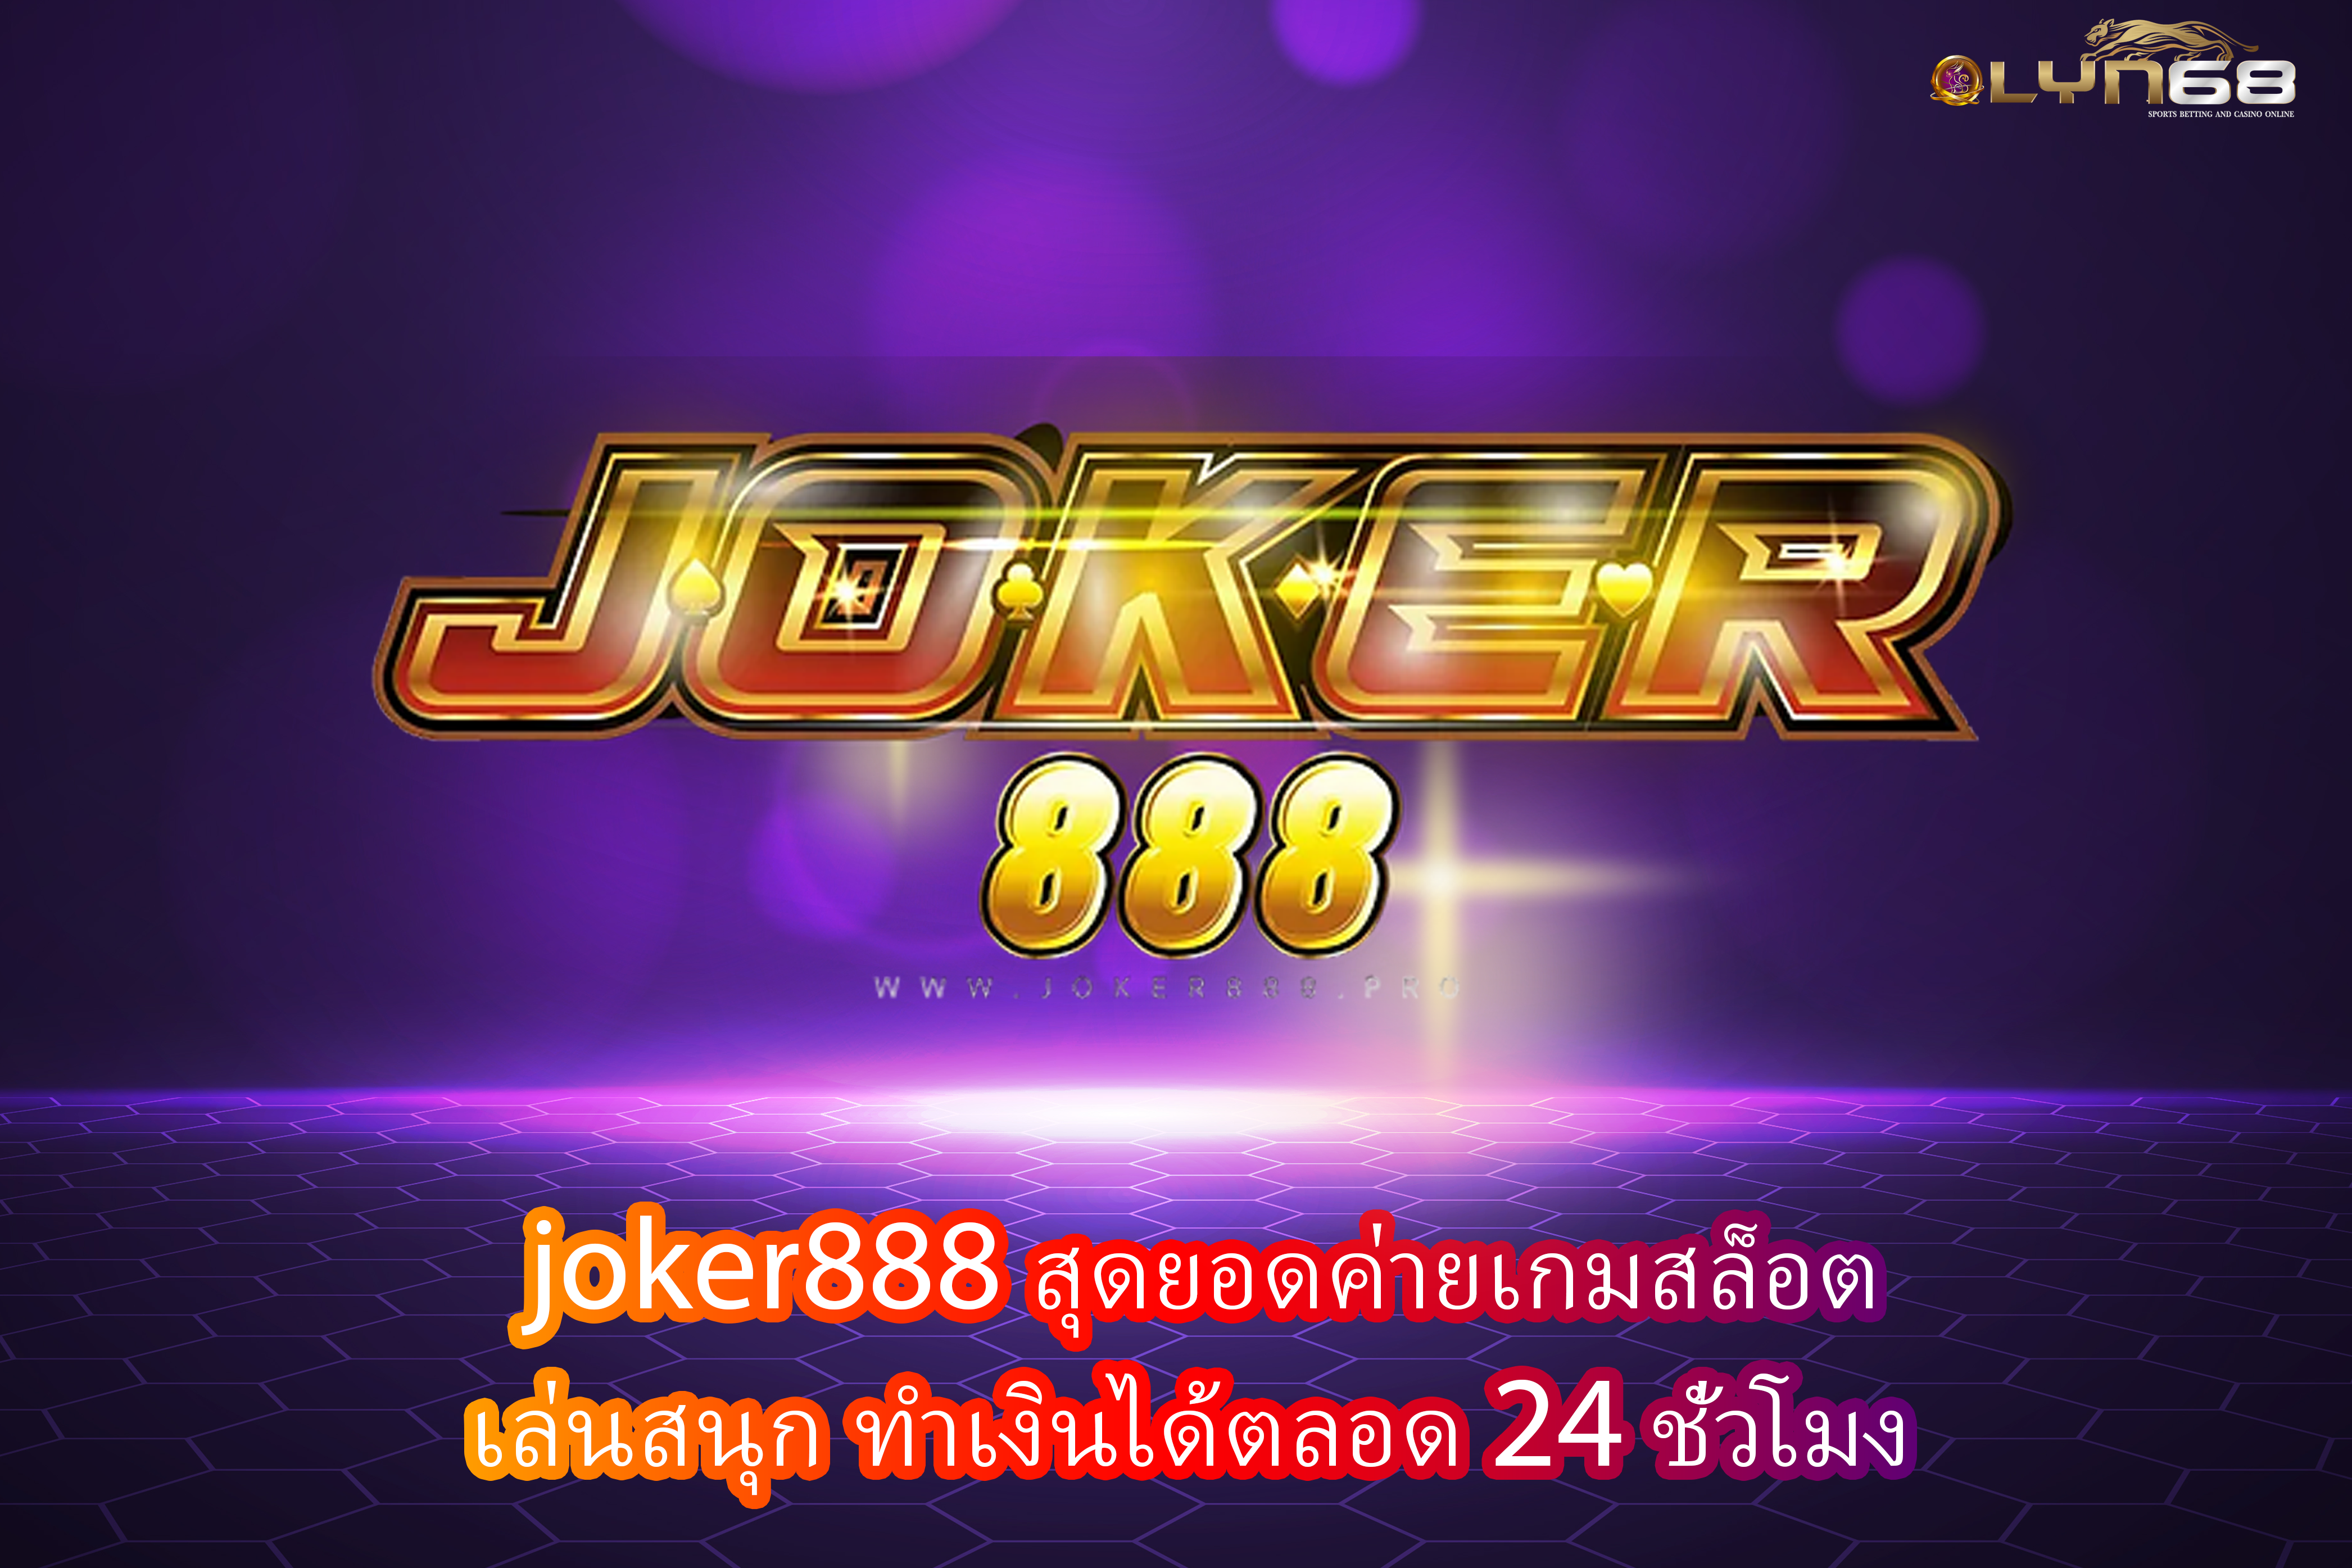 joker888 สุดยอดค่ายเกมสล็อต เล่นสนุก ทำเงินได้ตลอด24ชั่วโมง